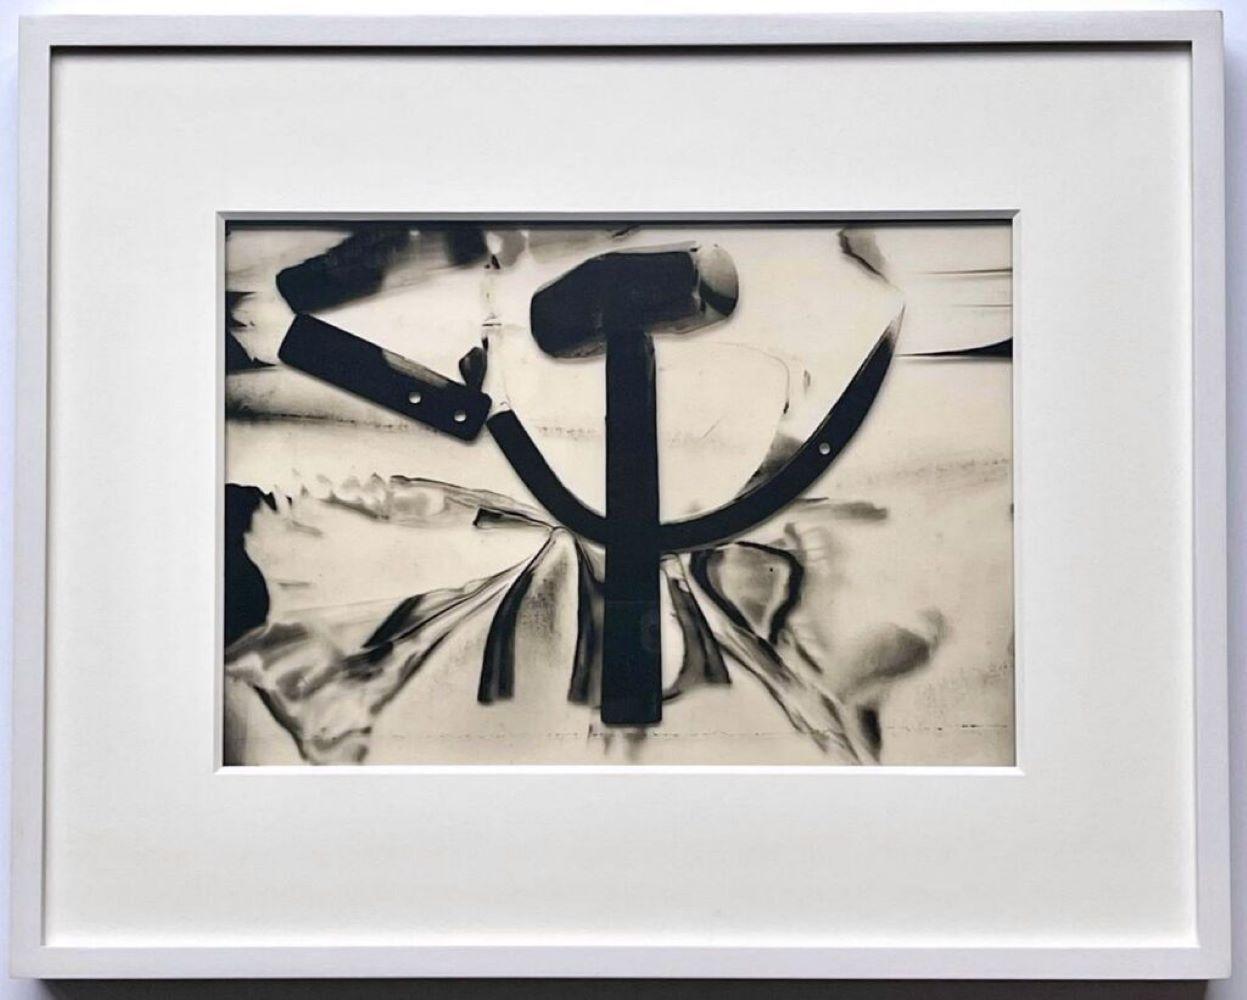 Andy Warhol Still-Life Photograph – Hammer & Sickle, Acetat eines ikonischen Bildes, verliehen von Warhol an Chromacomp Inc. 